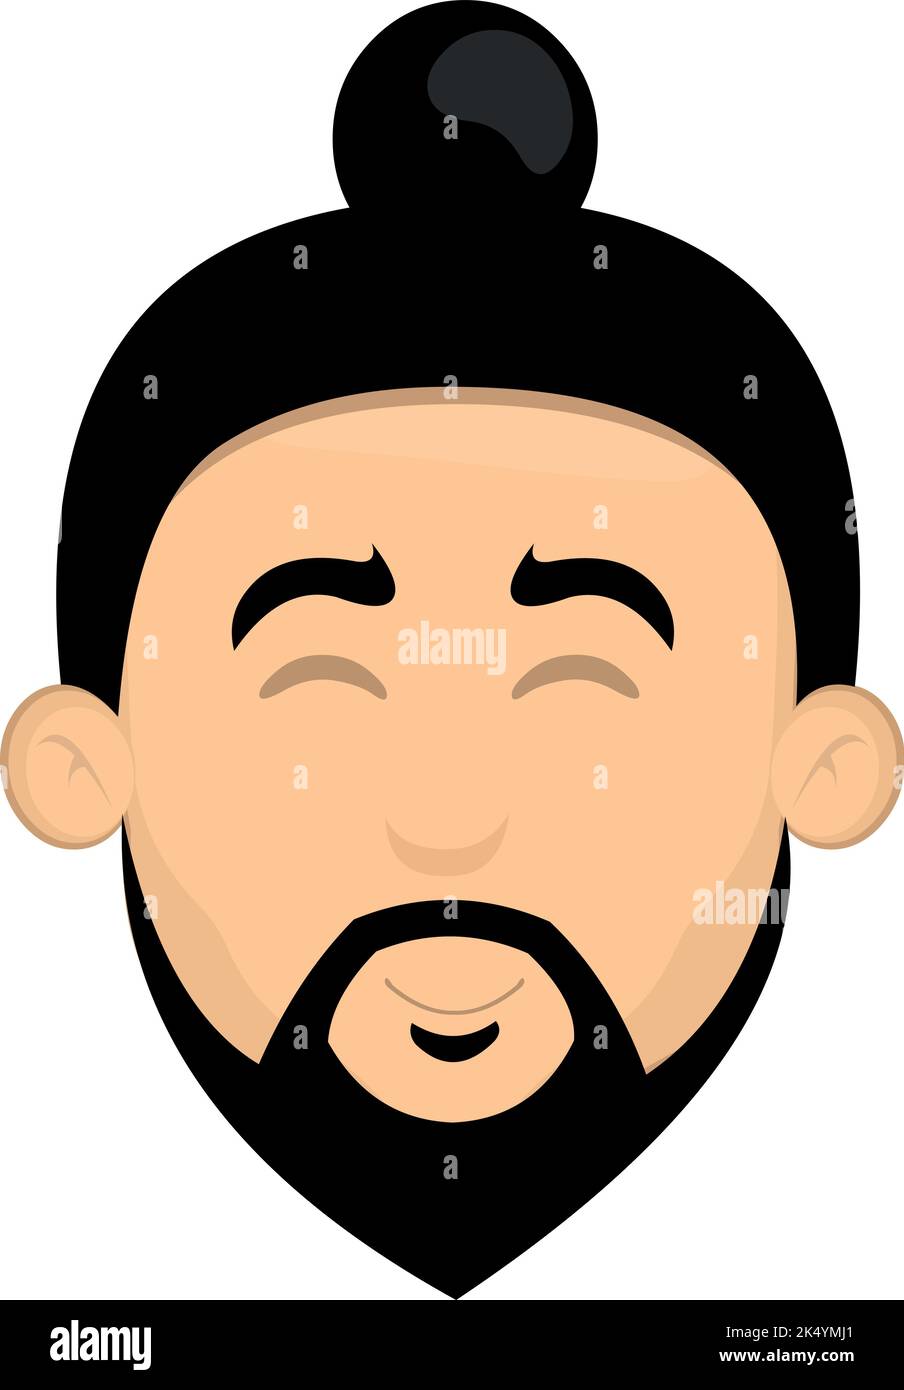 Illustrazione vettoriale della testa di un fumetto asiatico con barba Illustrazione Vettoriale